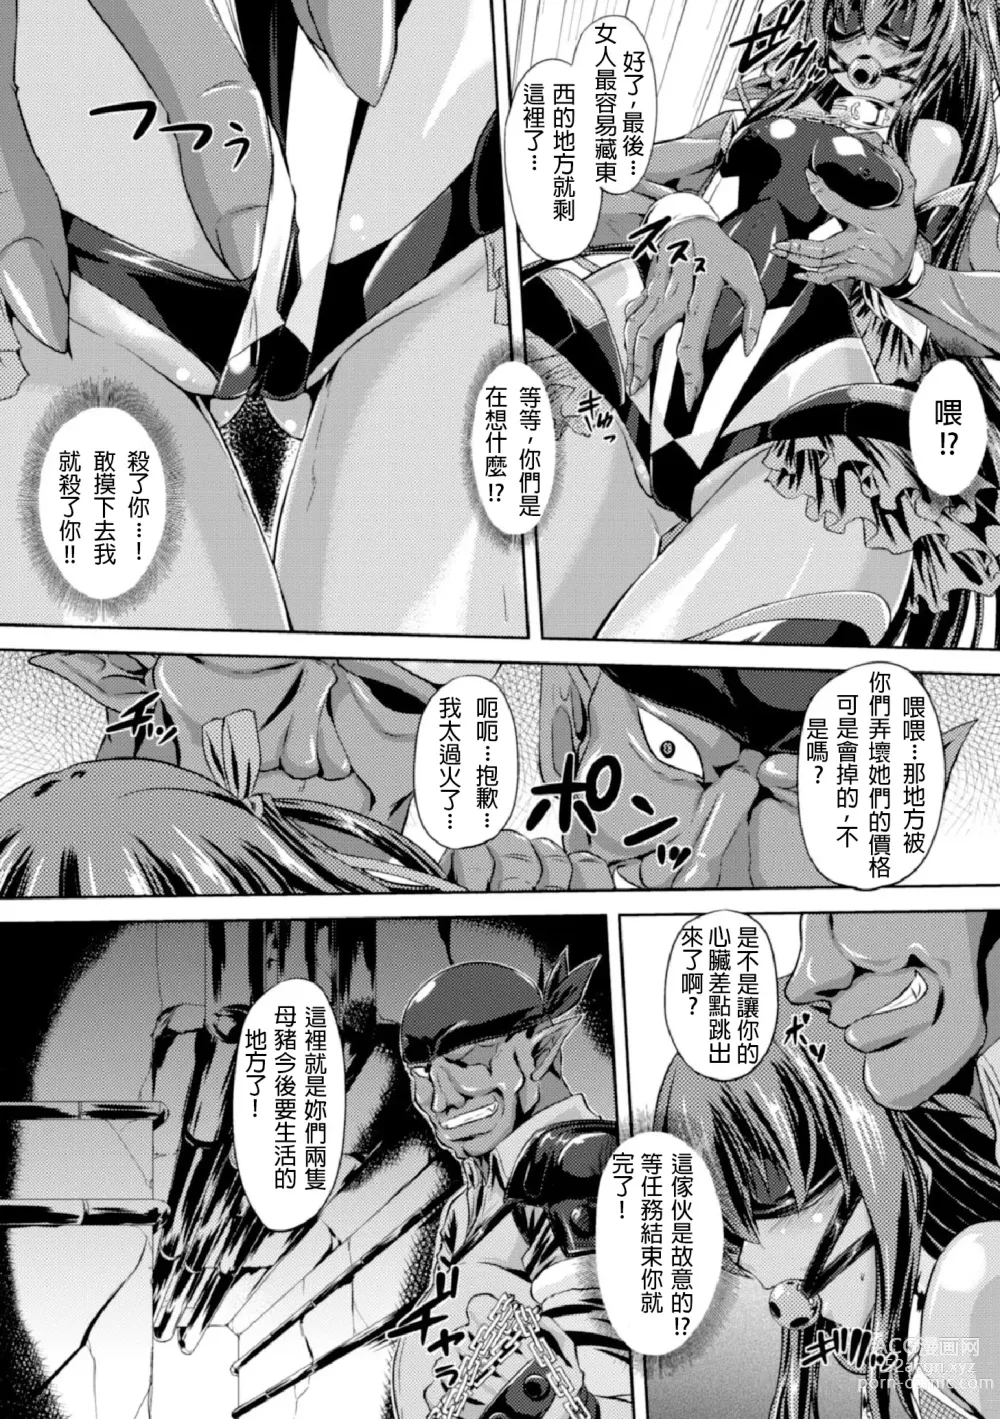 Page 10 of manga Taimanin Yukikaze ~Taimanin Wa Ingoku Ni Shizumu~